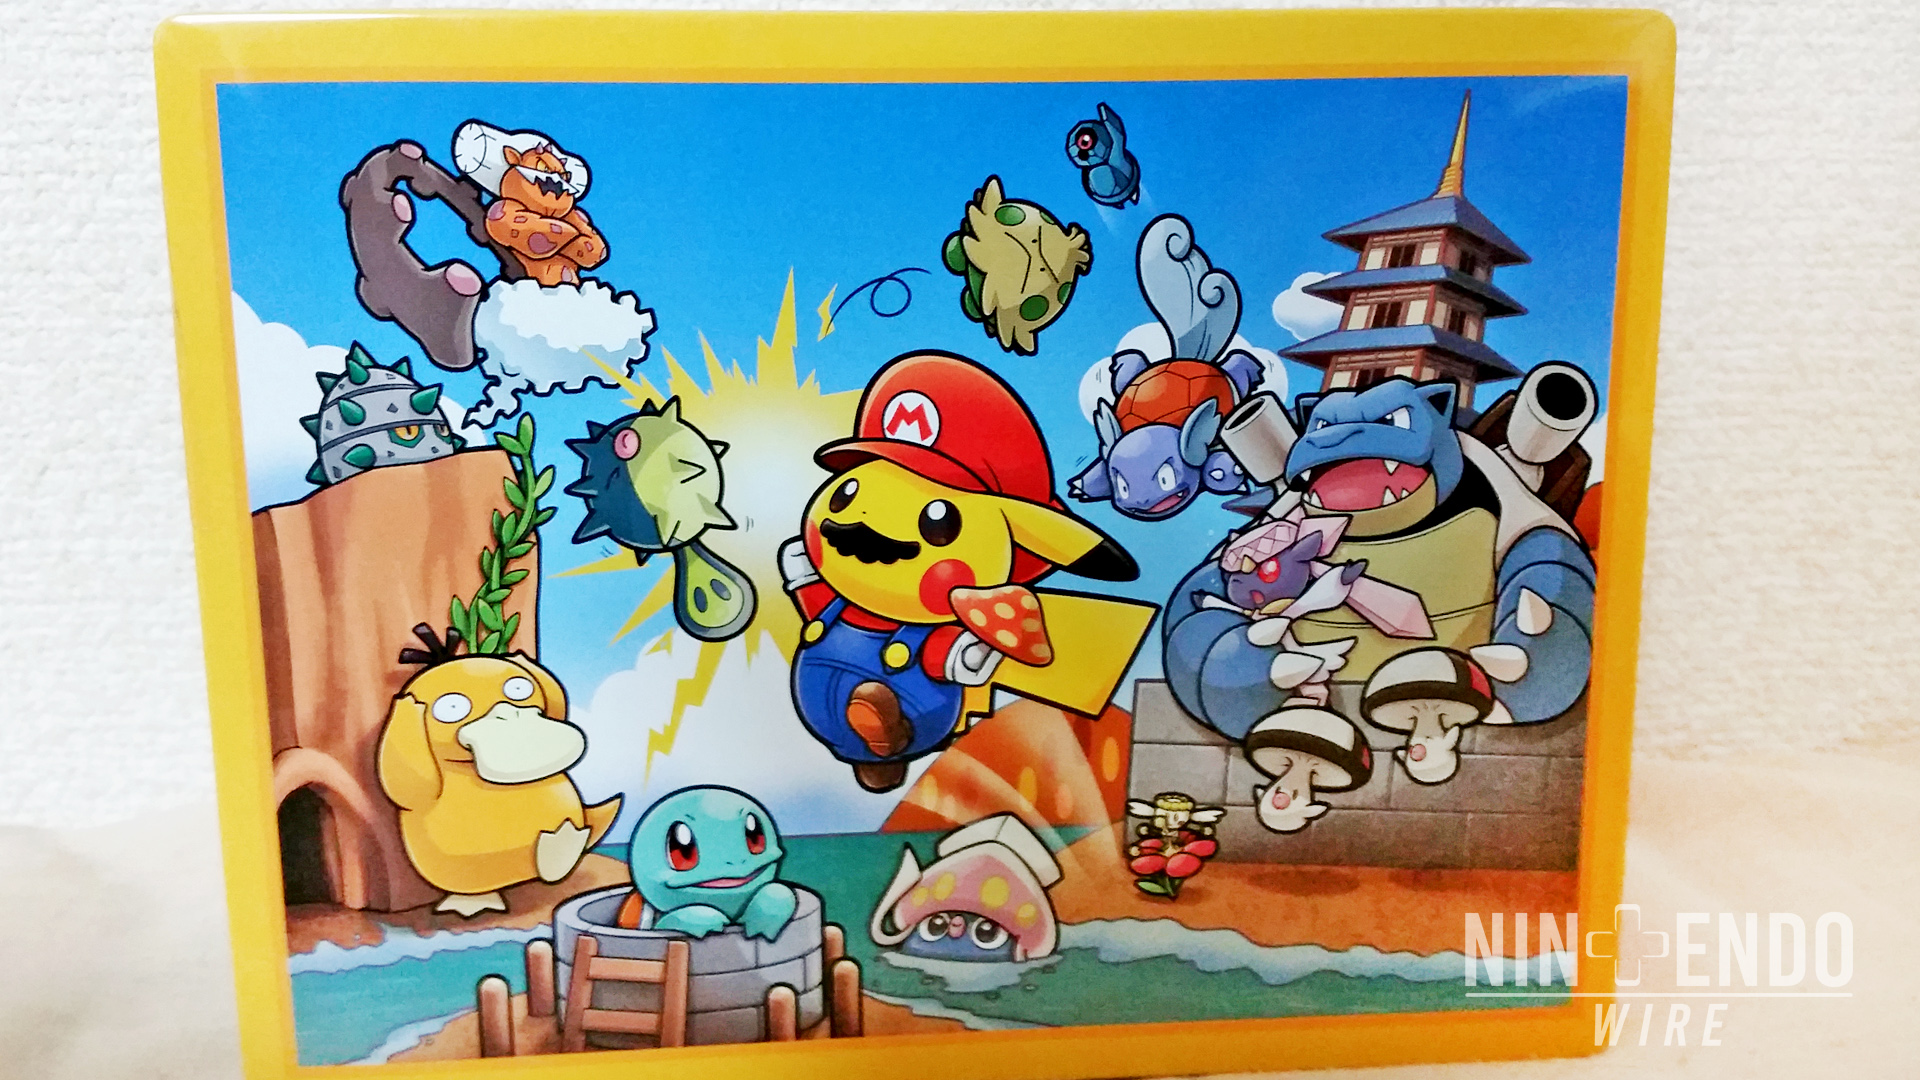 Mario Pikachu Jumps Into Japanese Pokemon Centers Nintendo Wire